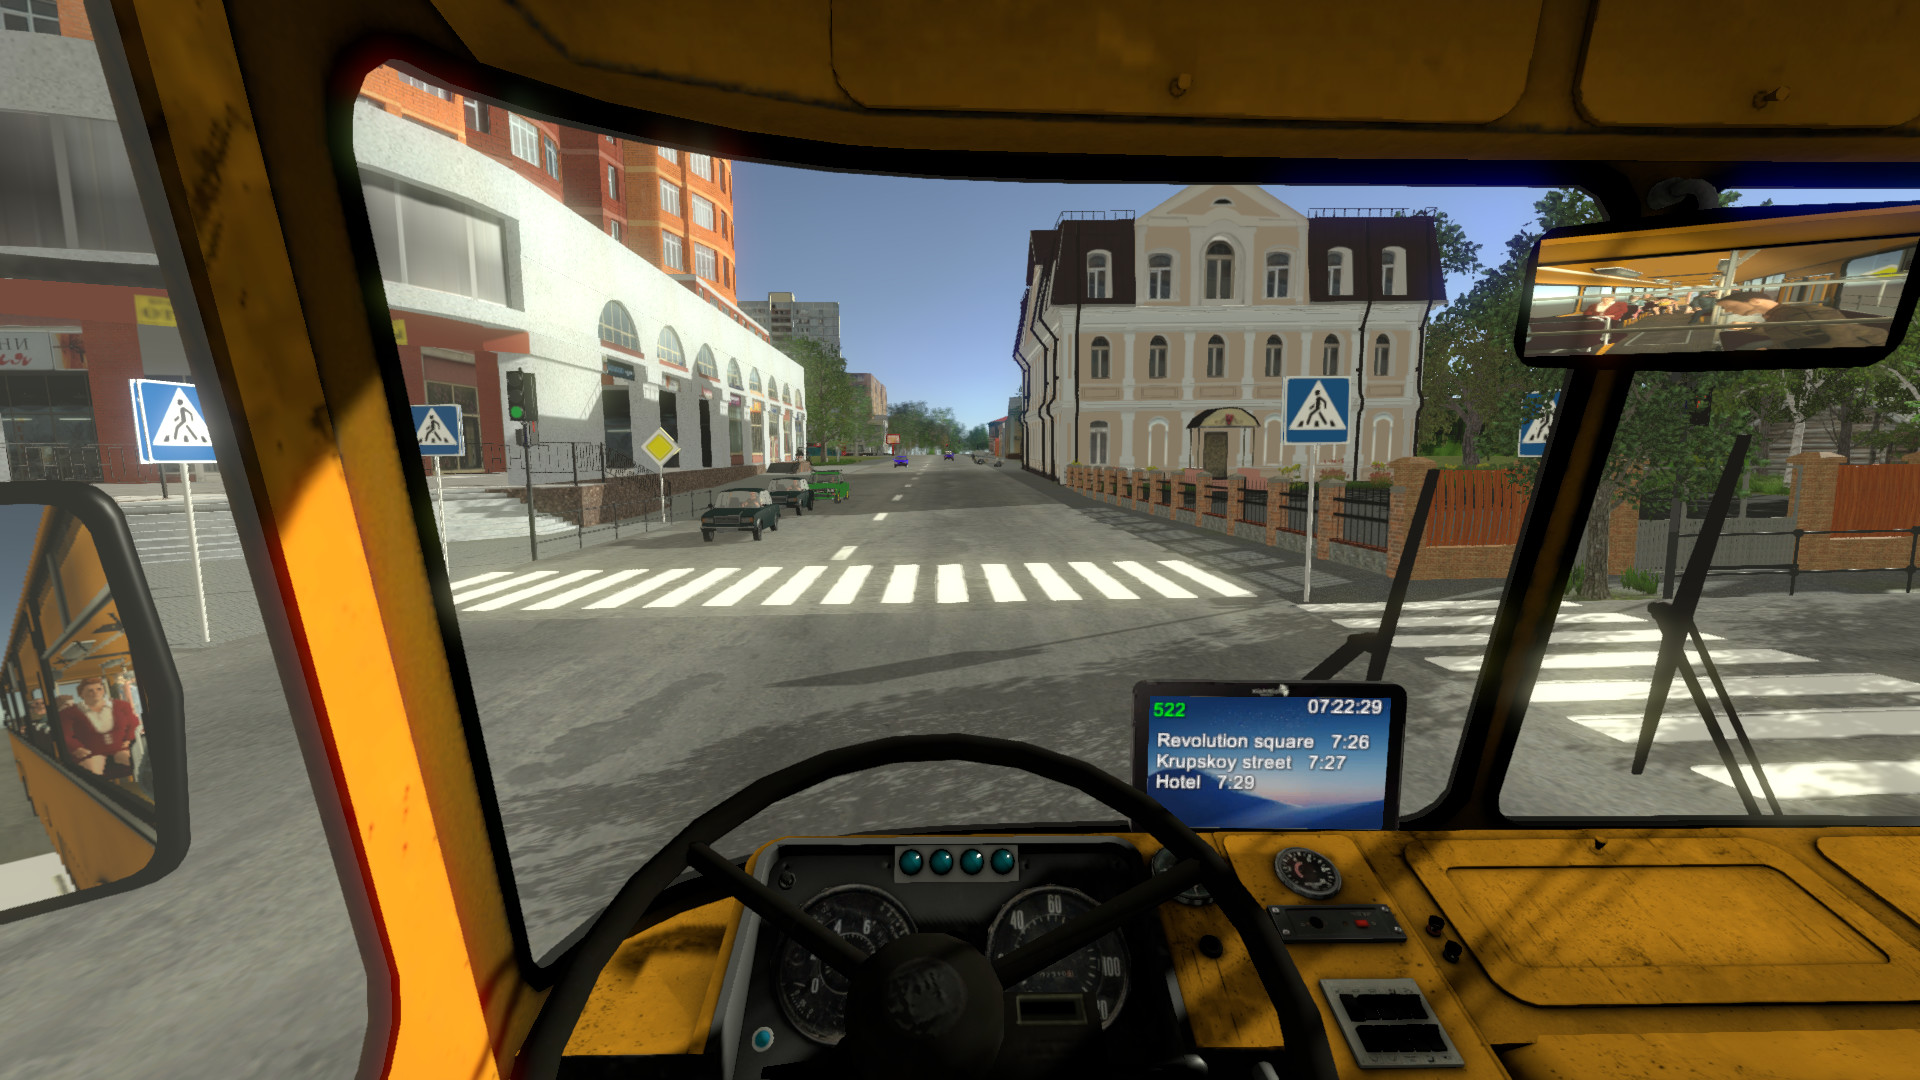 games like bus simulator 2018